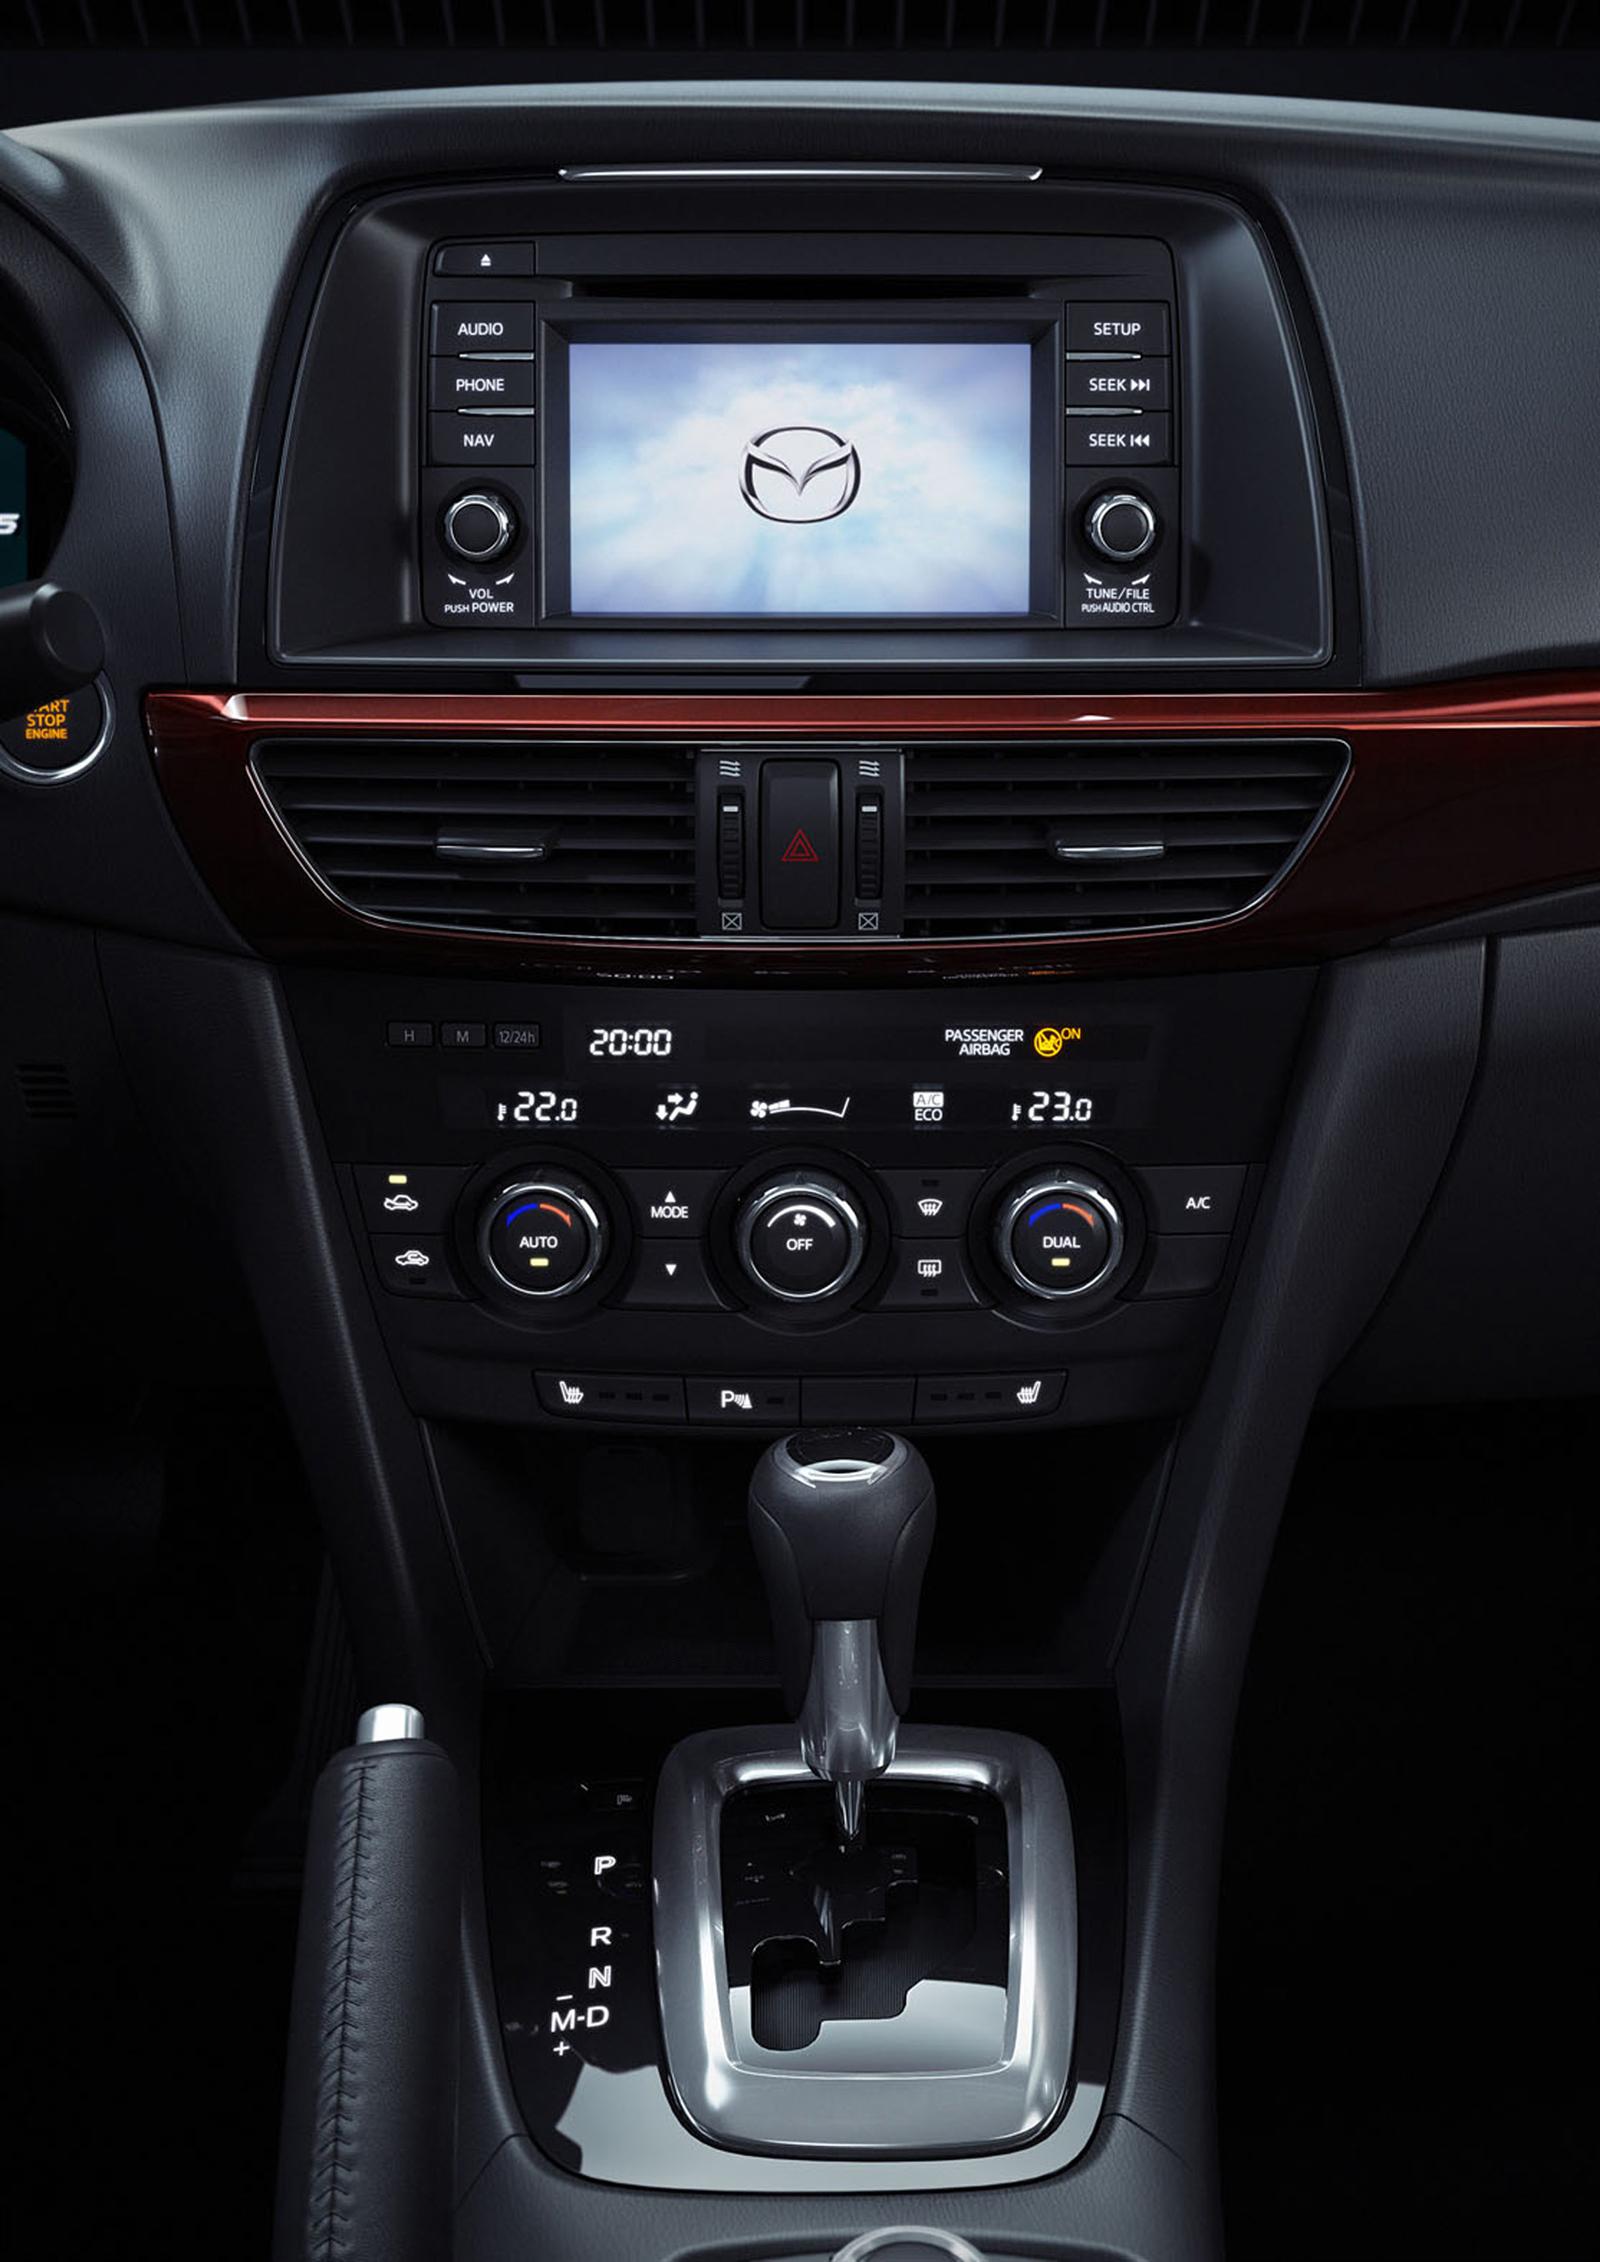 2013 Mazda 6